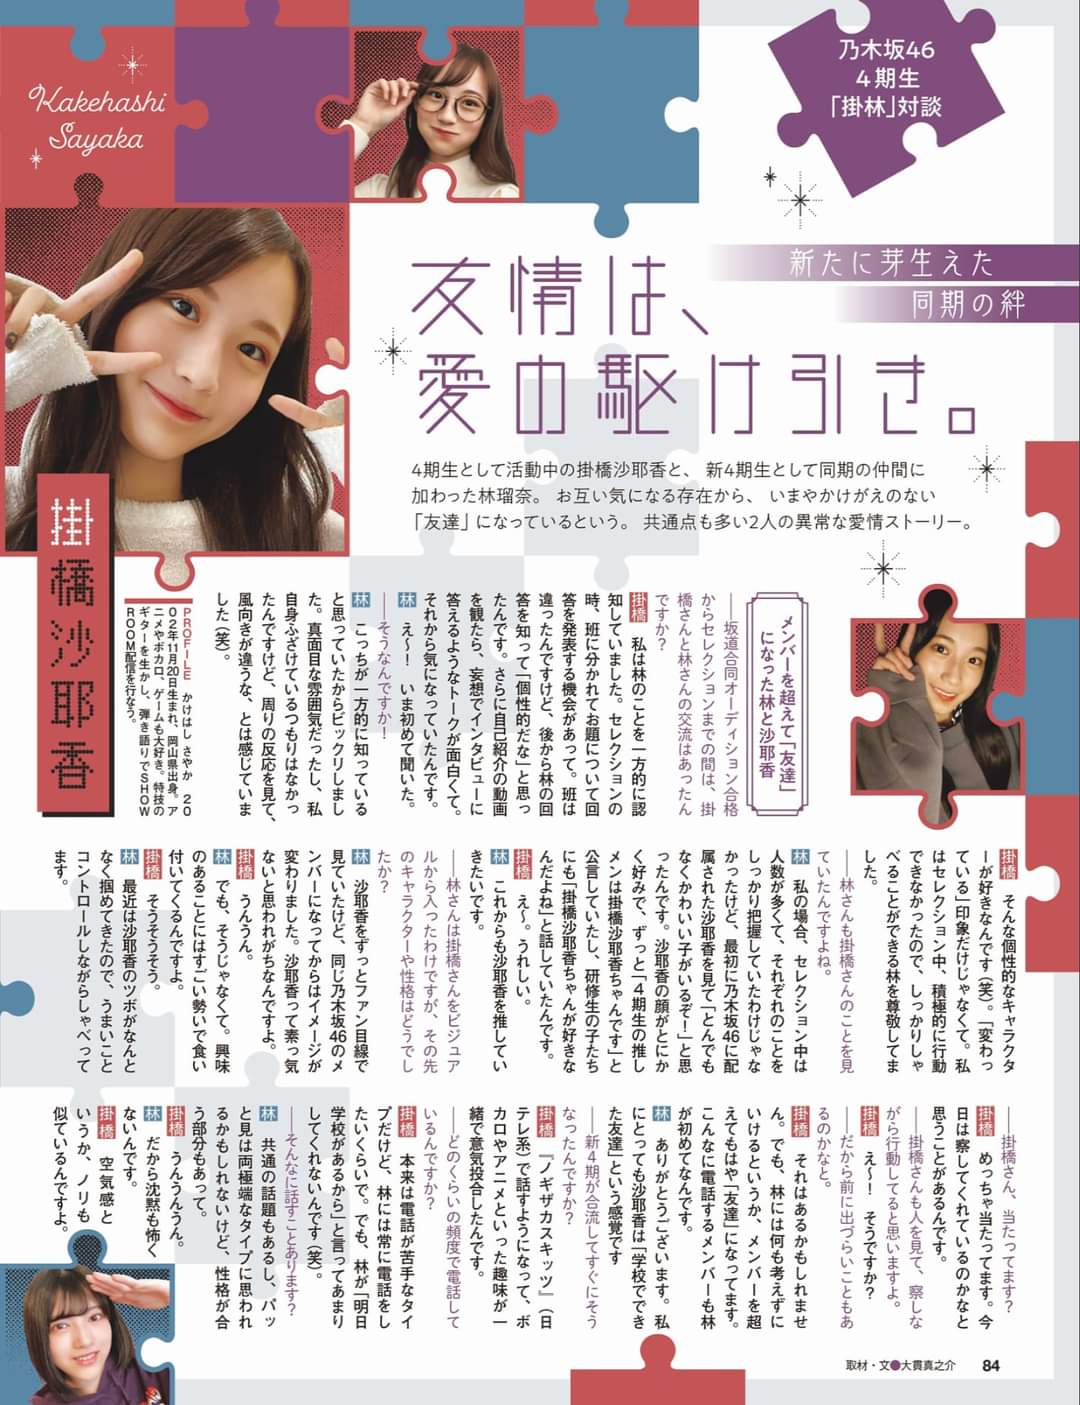 Ex Taishu Interview Hayashi Runa Kakehashi Sayaka Runa Kudasai